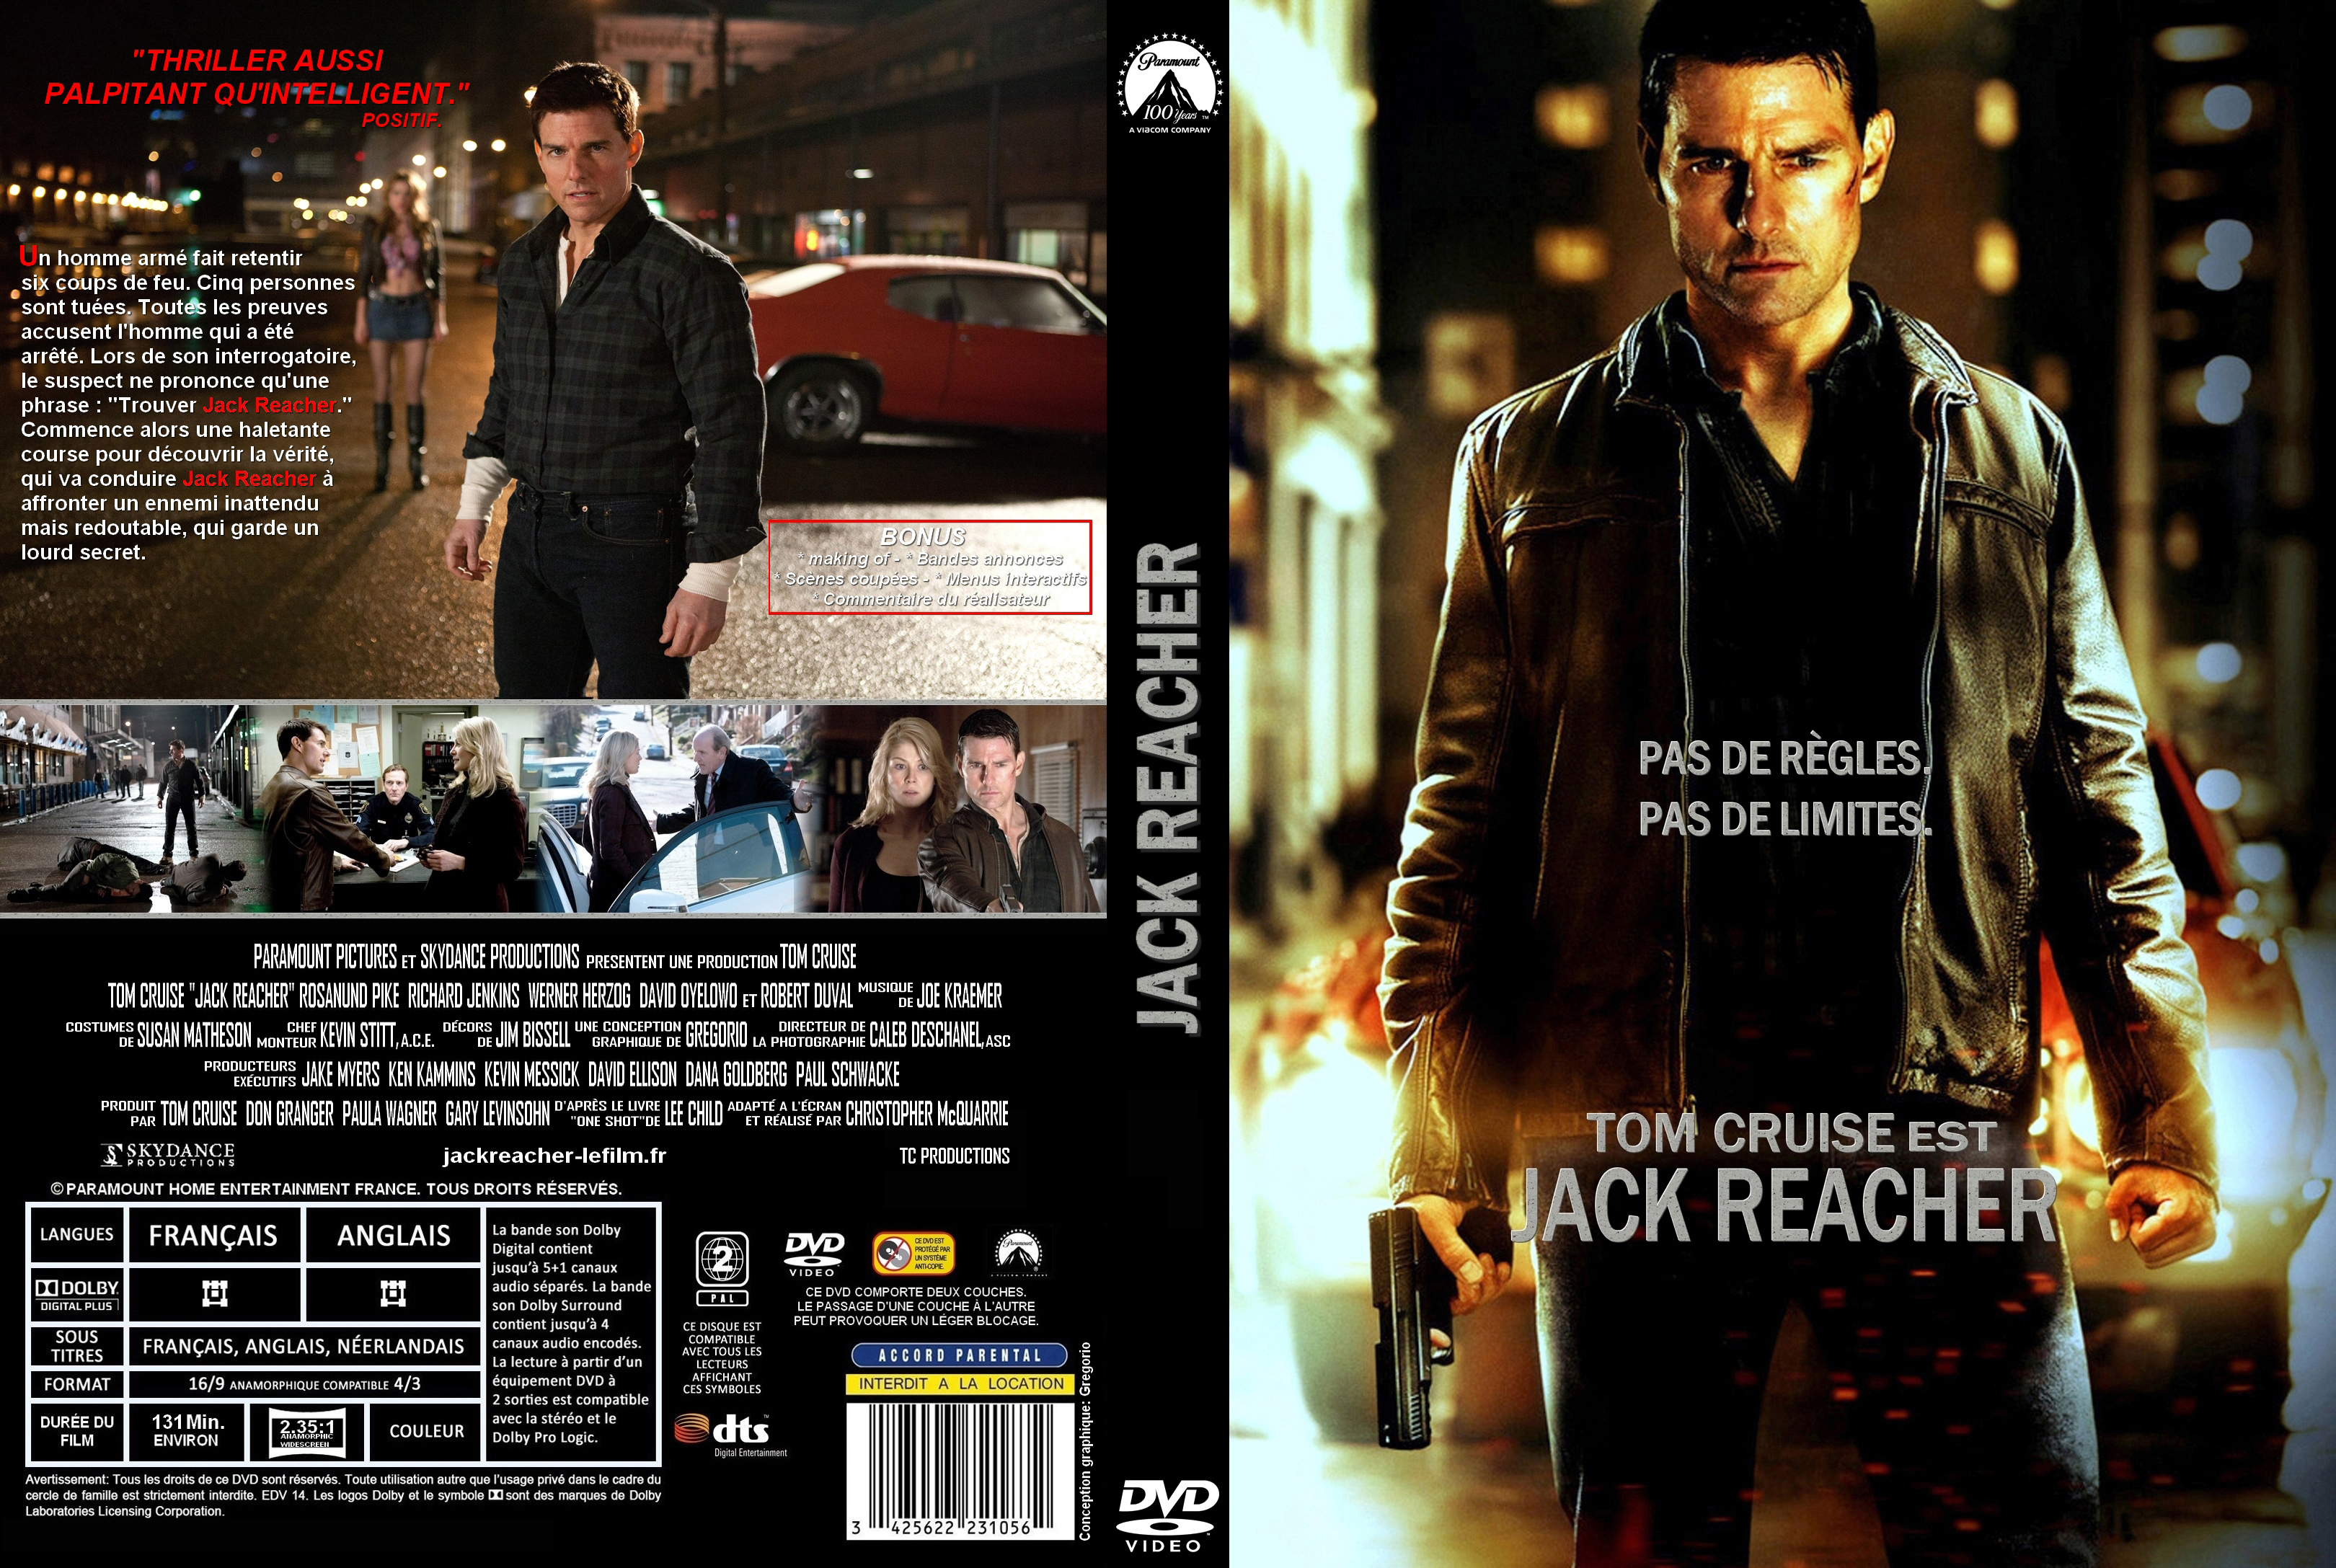 Jaquette DVD Jack Reacher custom v3